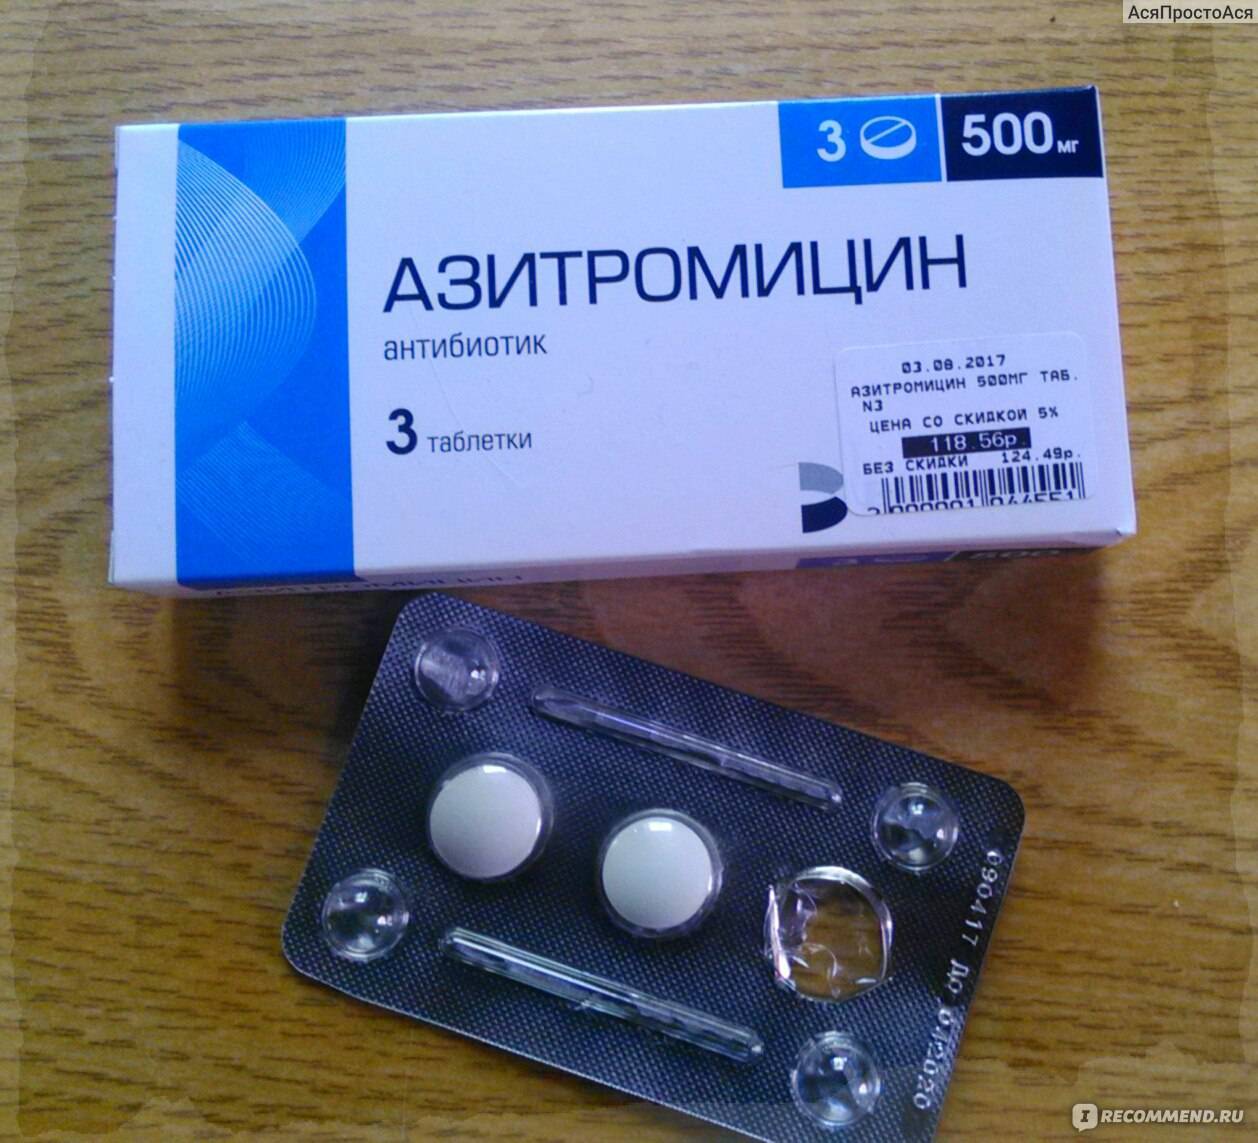 Можно принимать антибиотики азитромицин. Антибиотик три таблетки Азитромицин. Таблетки 3 шт антибиотики Азитромицин. Три таблетки от простуды антибиотик Азитромицин. Антибиотик azithromycin 500.